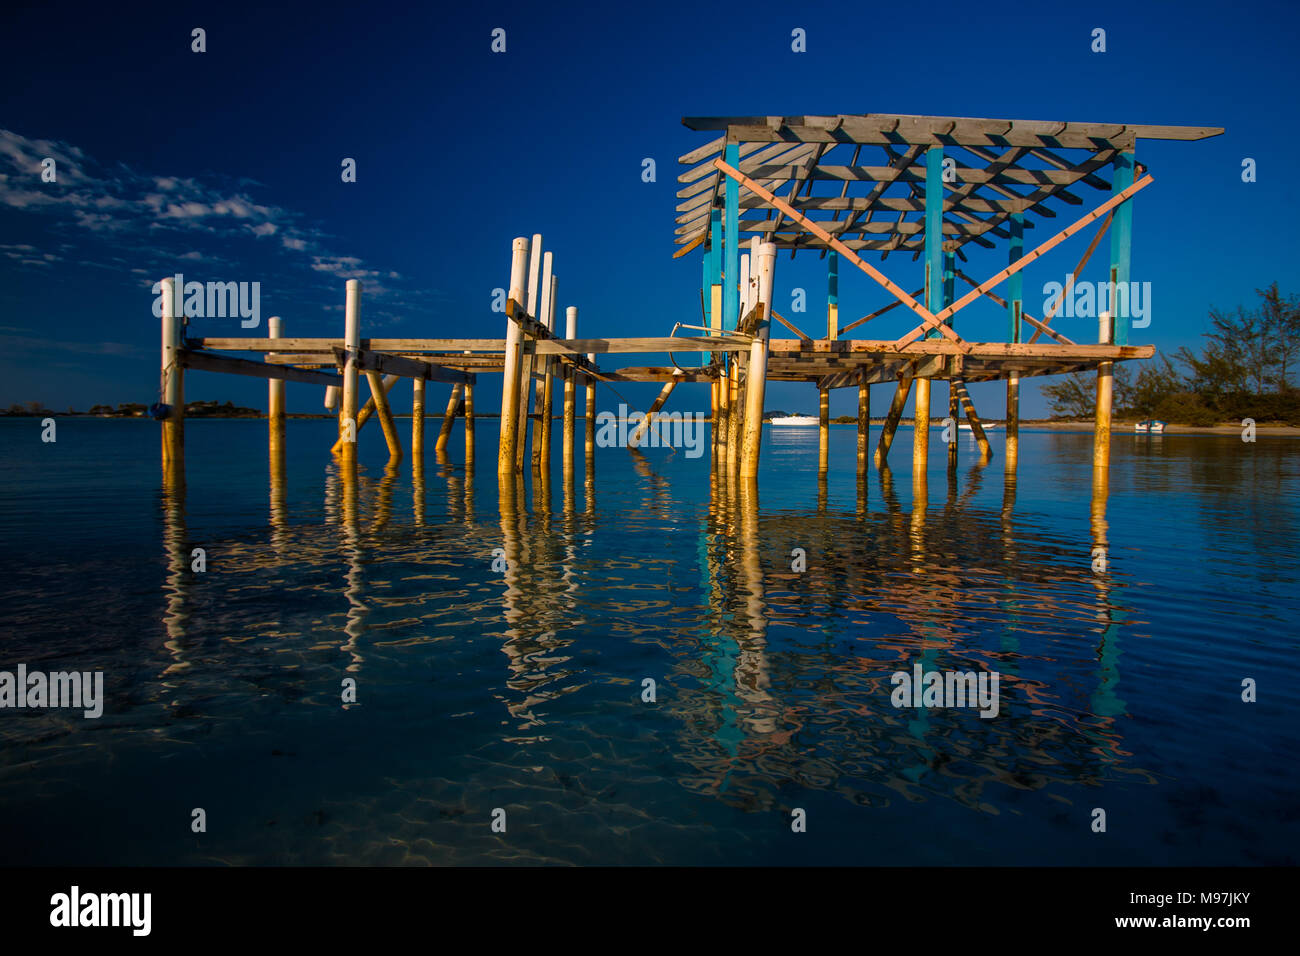 Pomeriggio notte riflette una bella immagine di un molo abbandonato sul litorale ancora delle Bahamas. Foto Stock